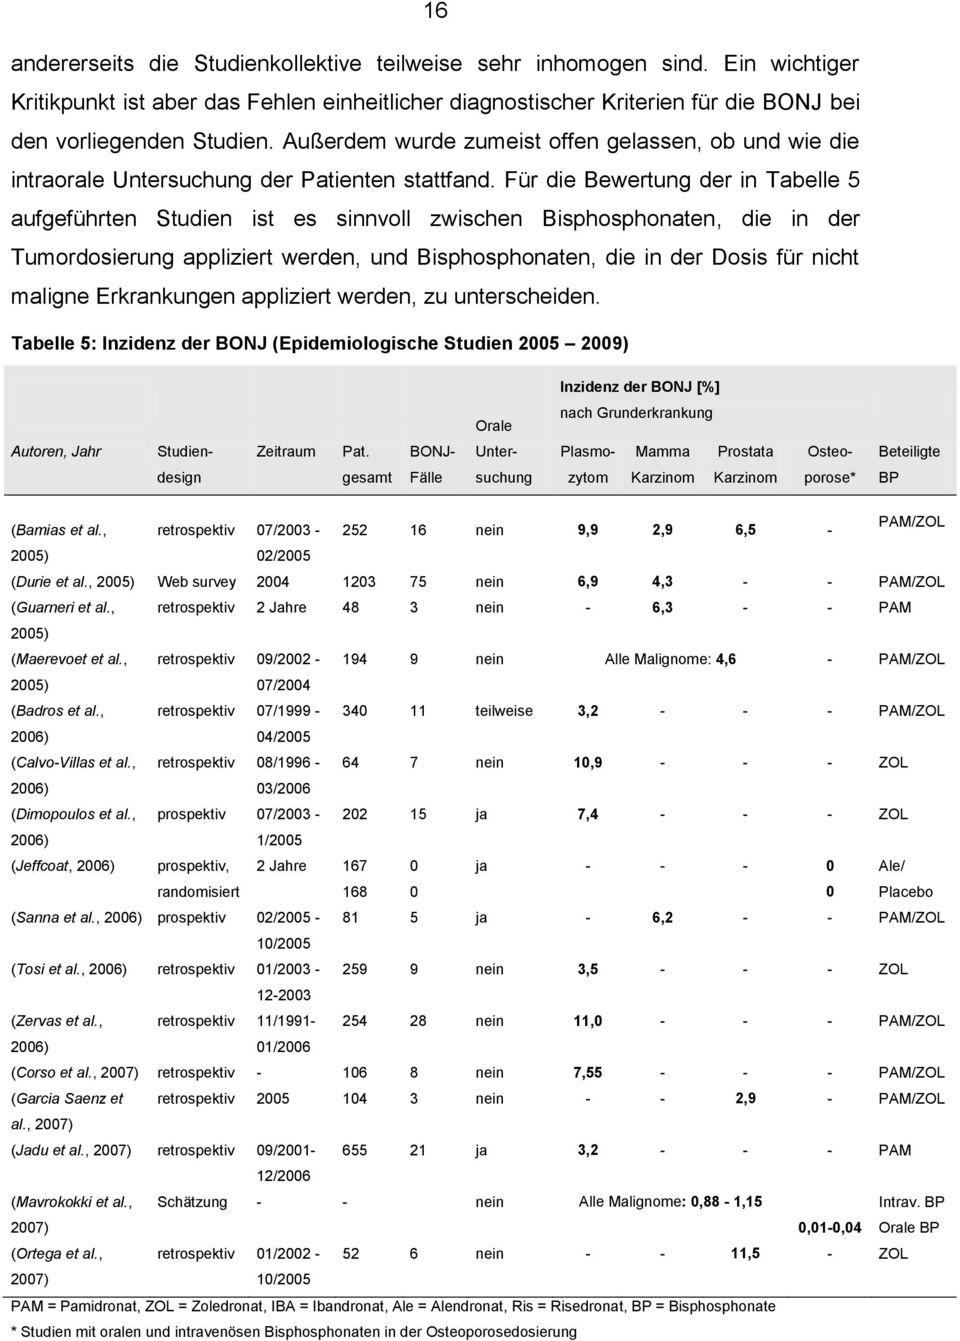 Für die Bewertung der in Tabelle 5 aufgeführten Studien ist es sinnvoll zwischen Bisphosphonaten, die in der Tumordosierung appliziert werden, und Bisphosphonaten, die in der Dosis für nicht maligne